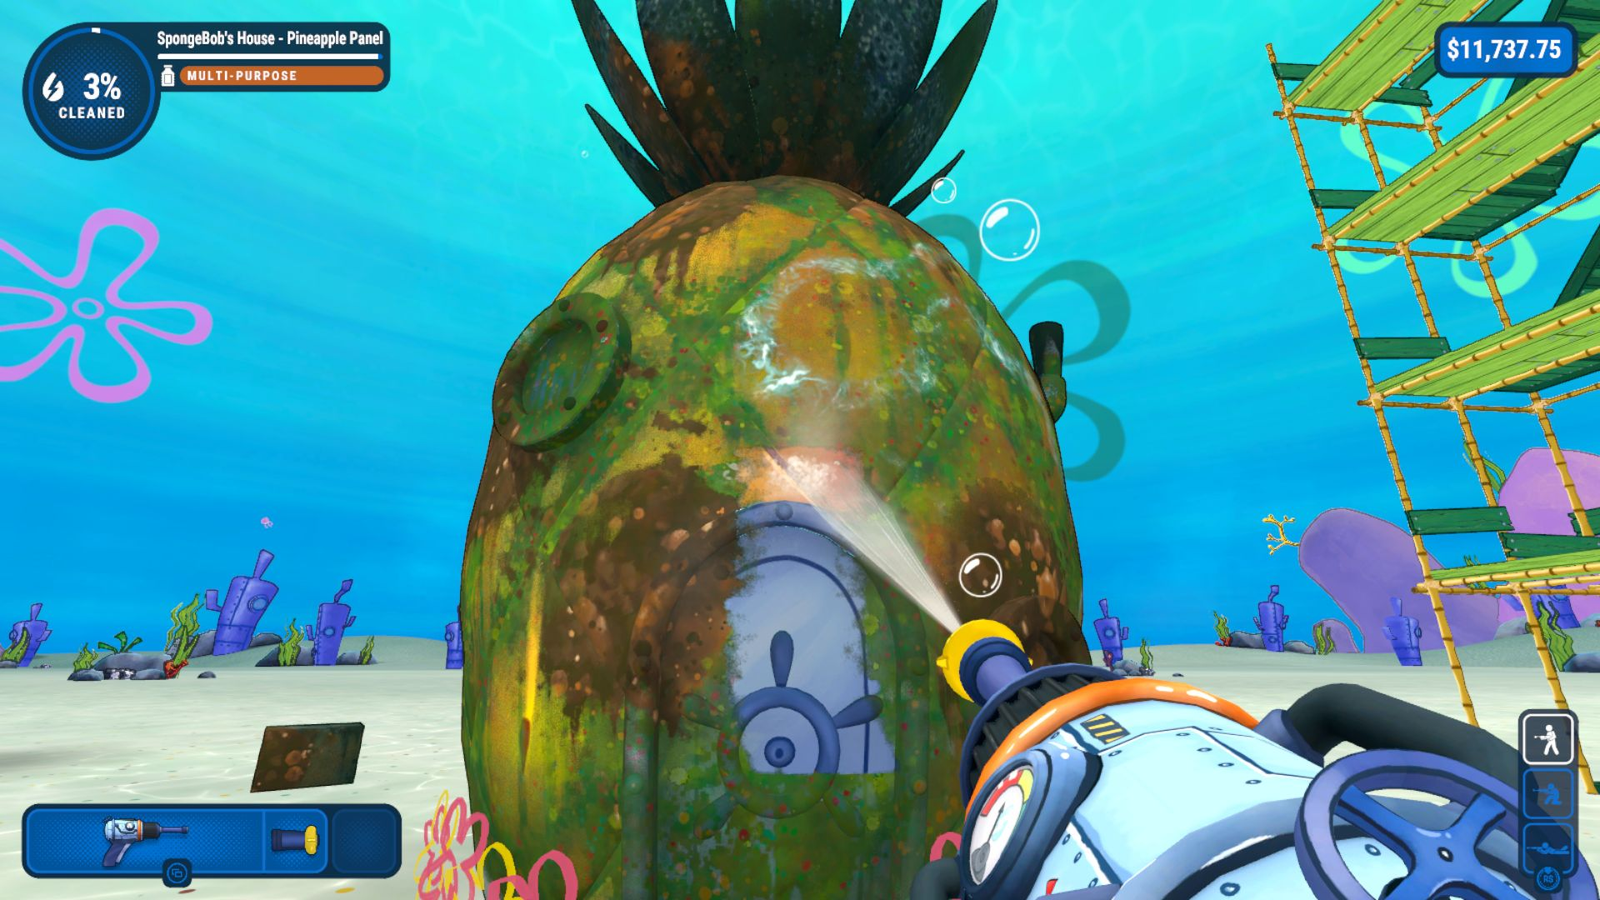 PowerWash Simulator's SpongeBob SquarePants DLC out at the end of June